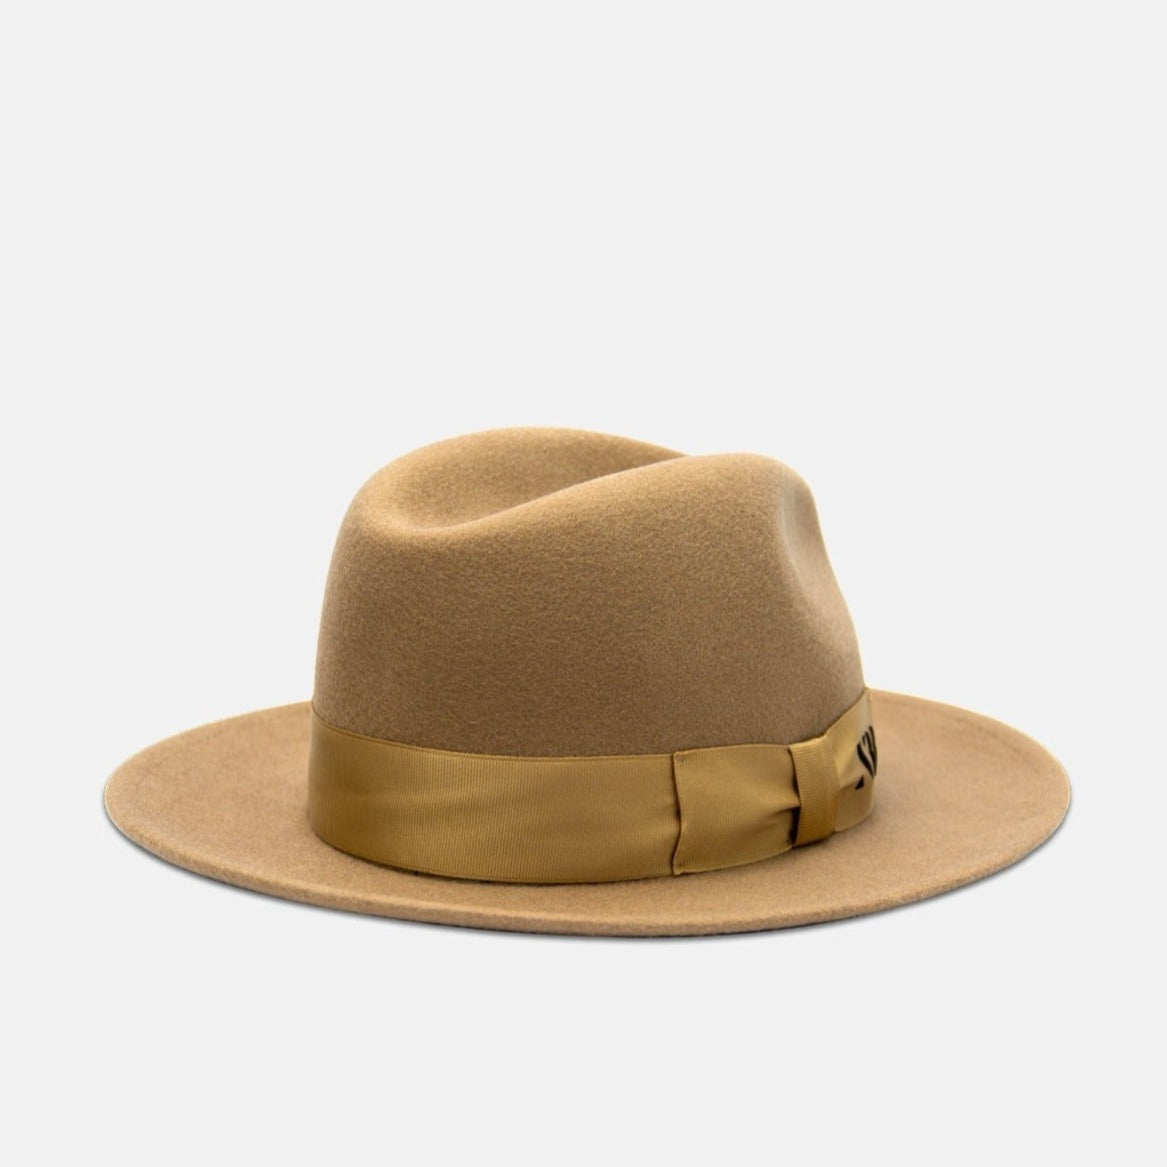 NTHIRTYTHREE - N33 - Fedora Felt Hat - Tilby Golden Beige - handmade in Europe